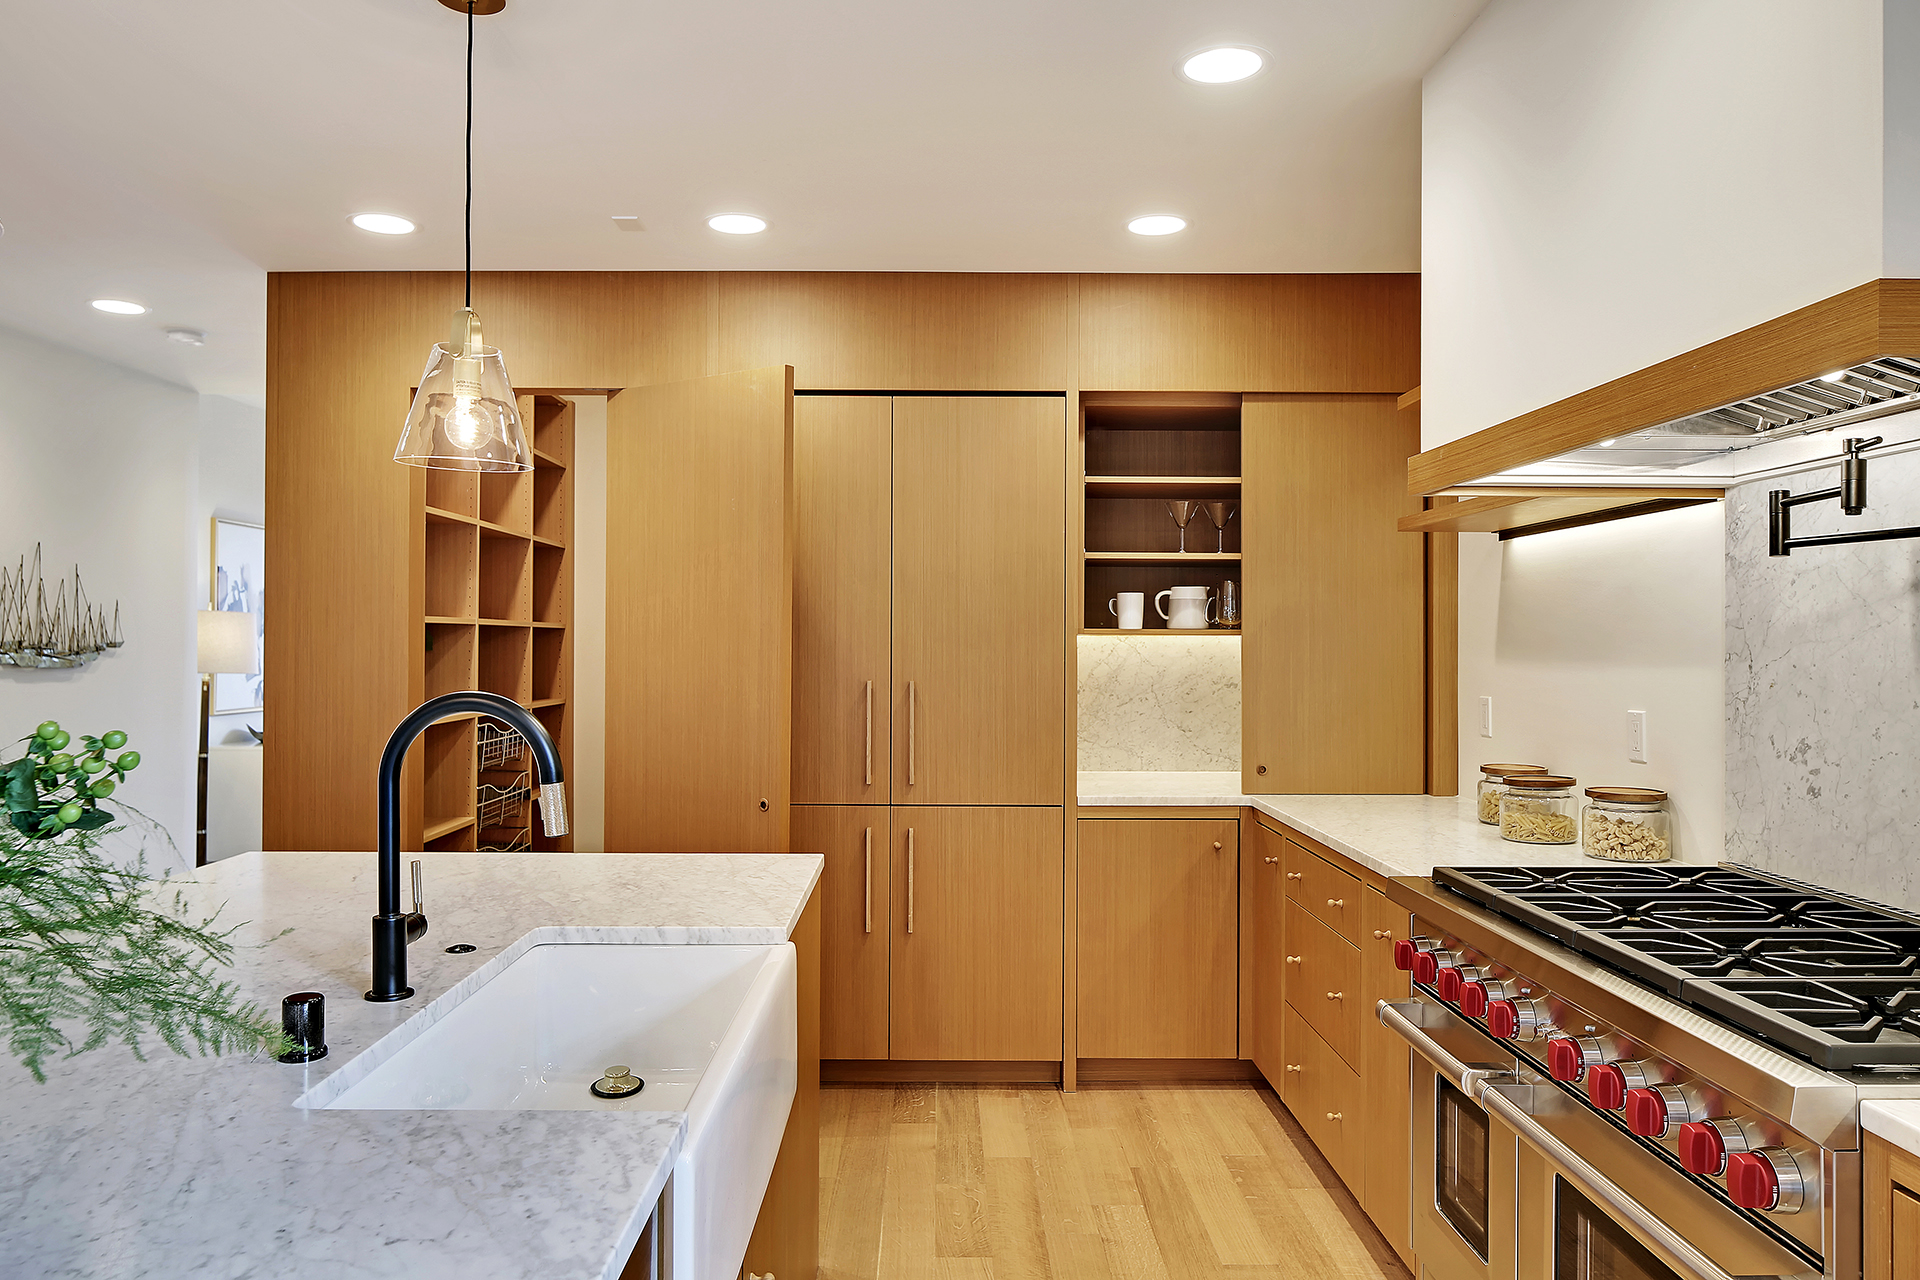 5 Must-Have Modern Kitchen Conveniences